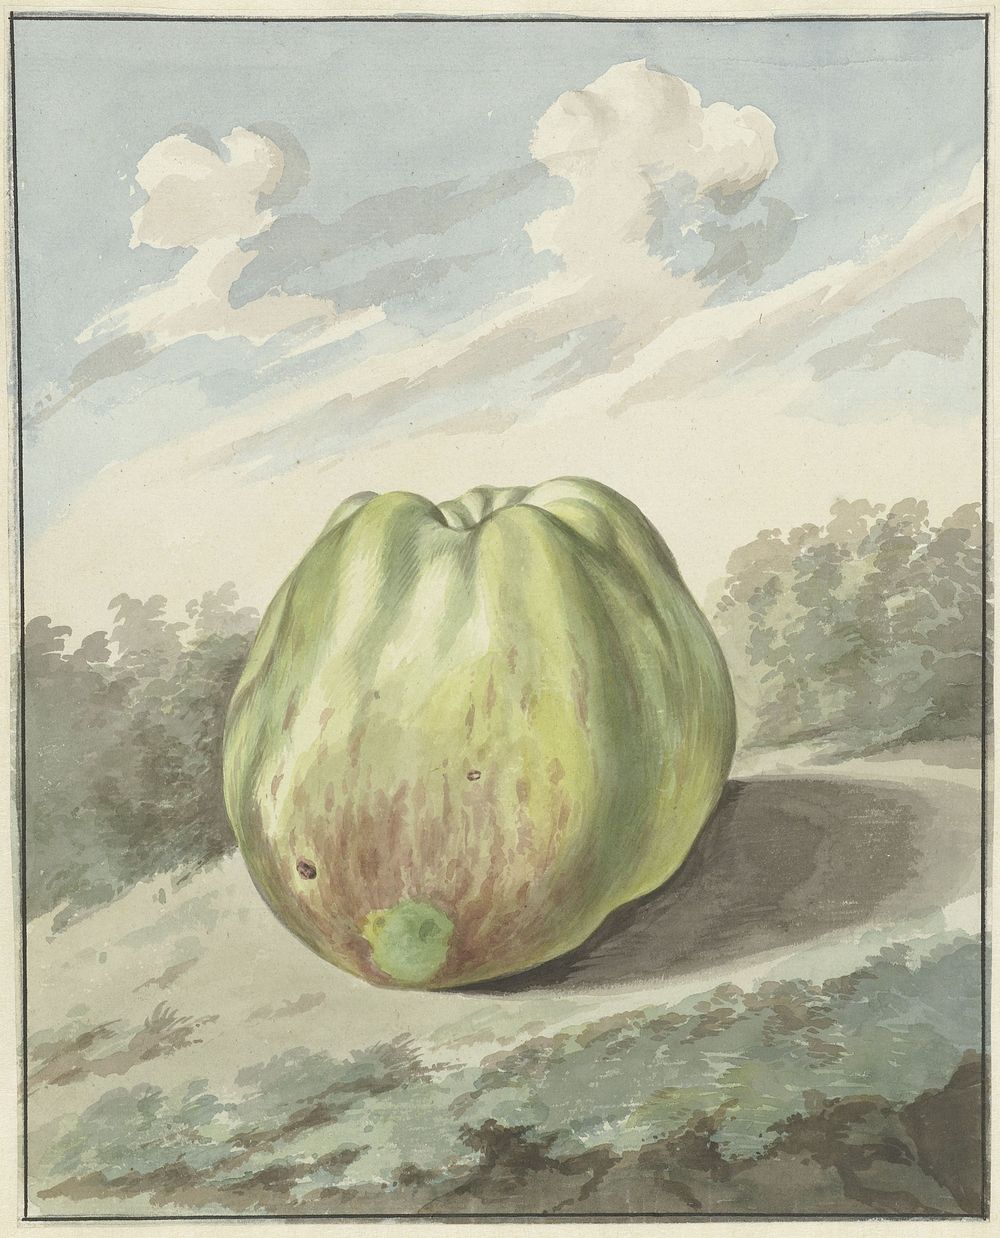 Appel in een landschap (1700 - 1800) by Pieter Gevers